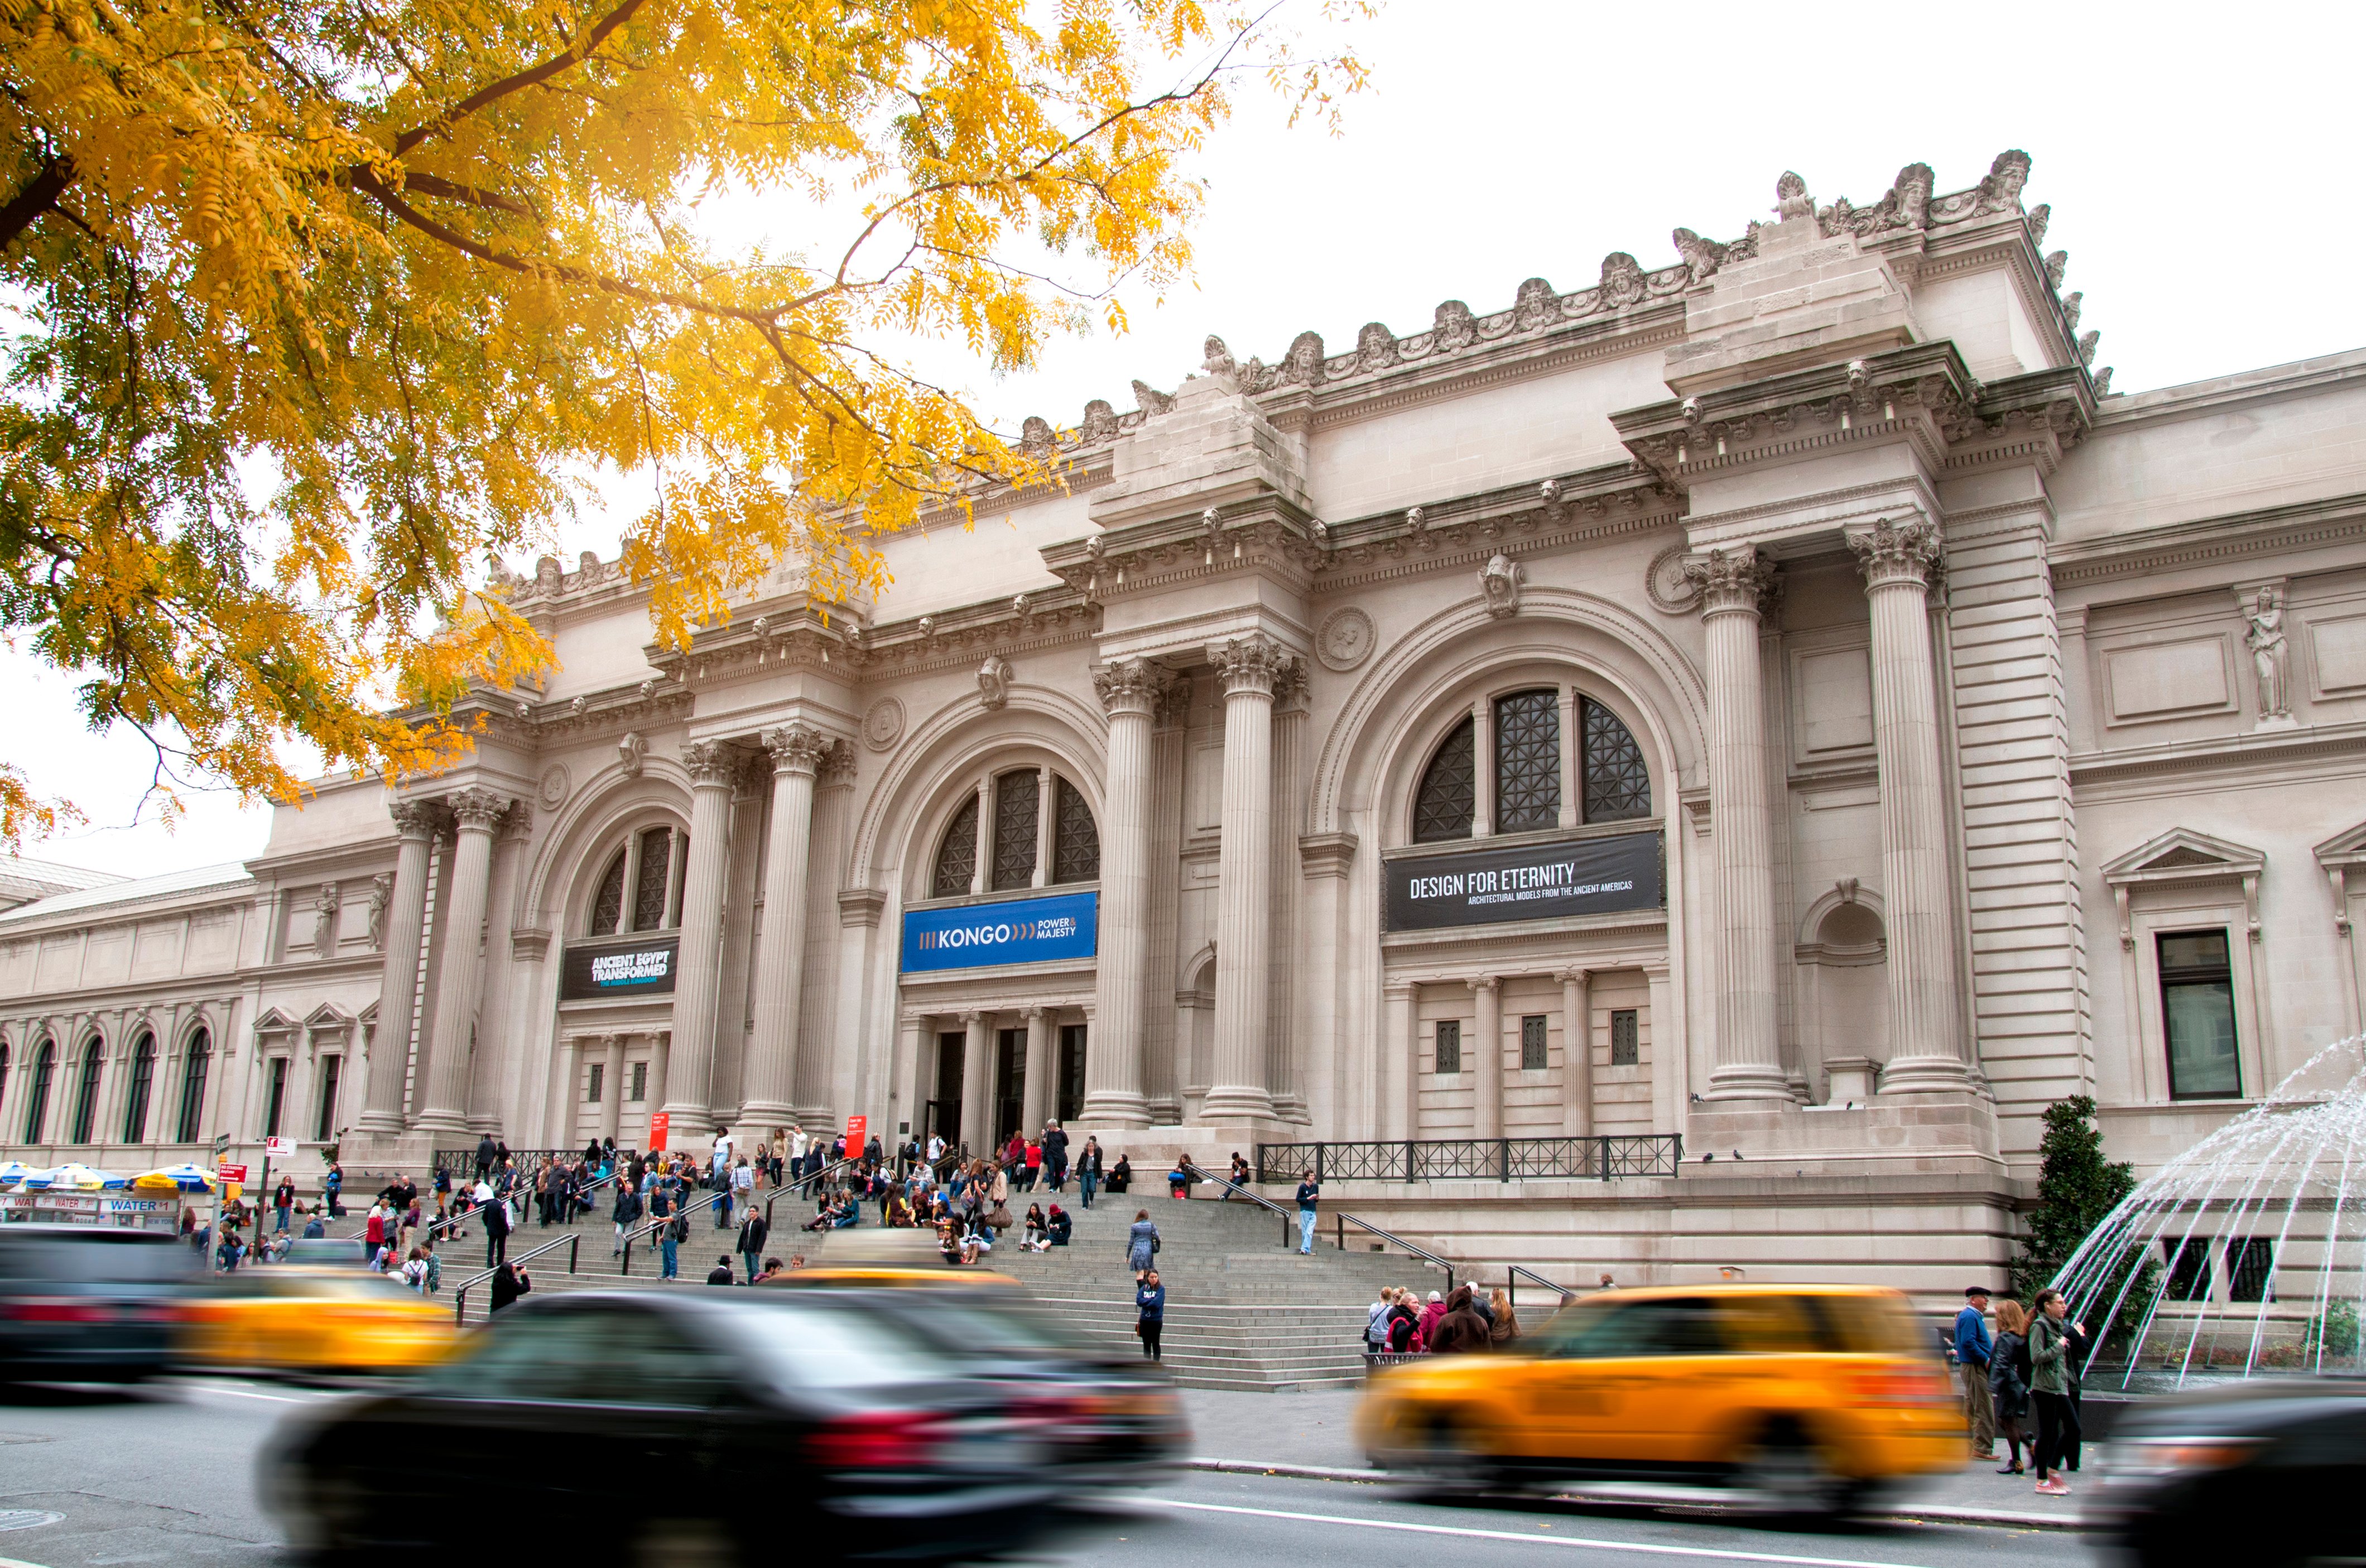 Entrada al Museo Metropolitano de Arte de Nueva York con taxis pasando por la calle